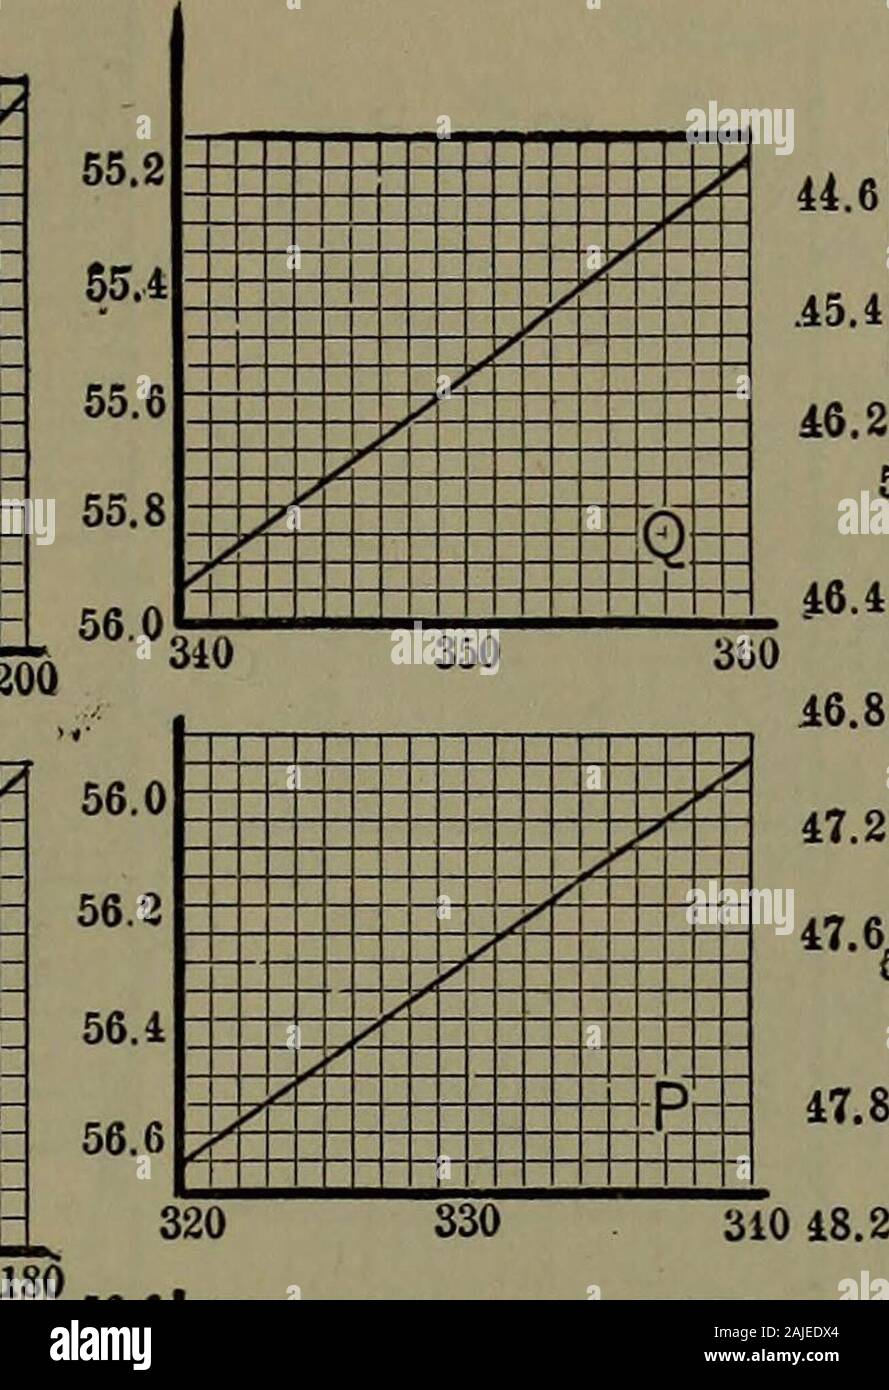 Manual de tablas y diagramas termodinámicos; una selección de tablas y  diagramas de Ingeniería termodinámica . 180 190 200 ^^ J> . ,7 .T / 4 ,/  ,una y / ^^ >